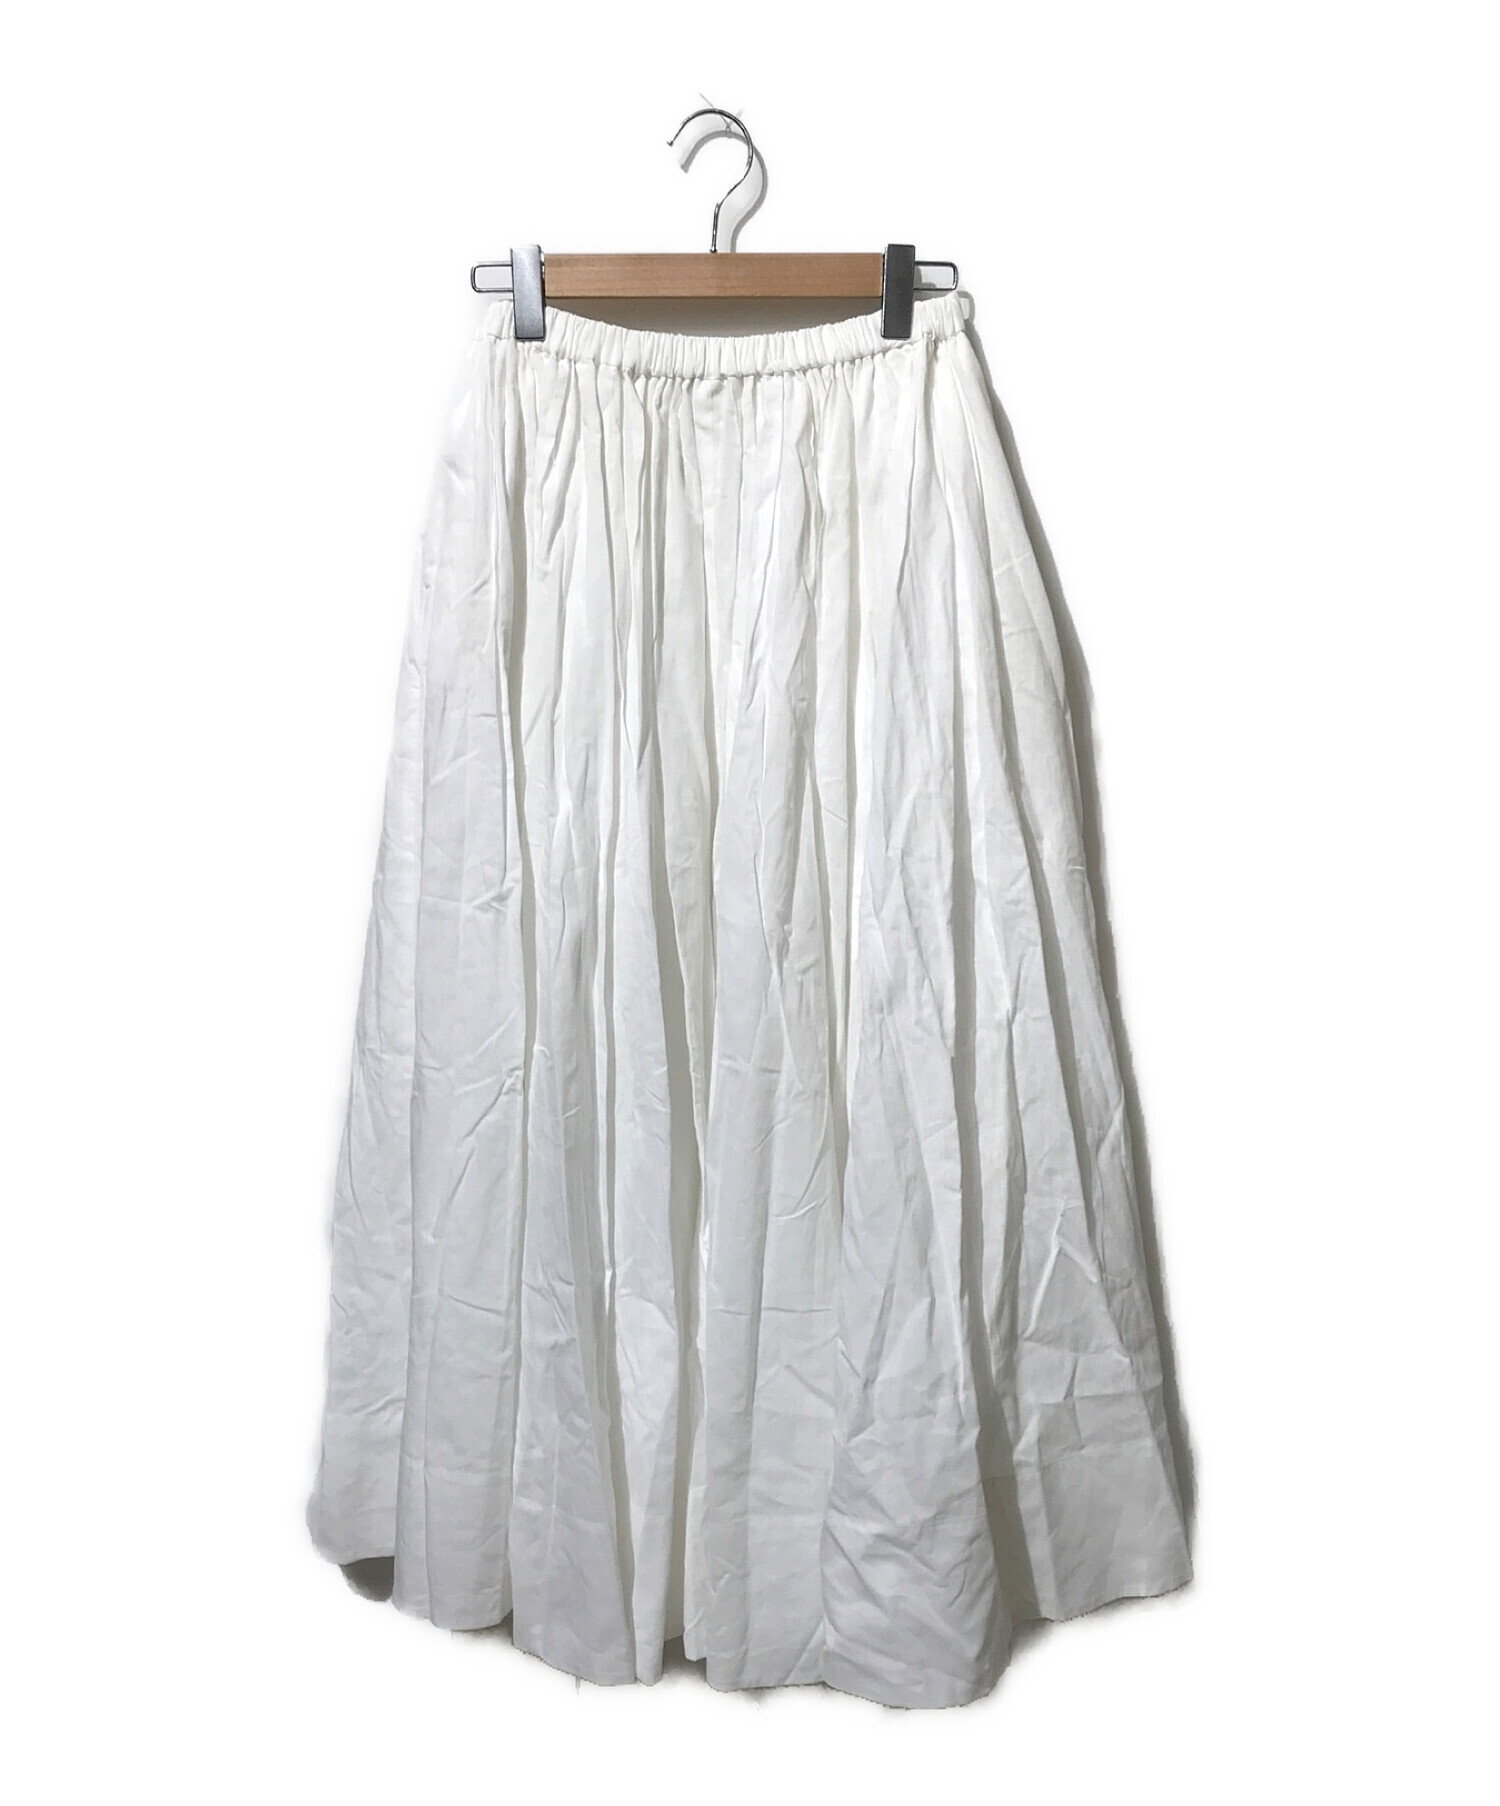 ebure (エブール) コットンギャザースカート ホワイト サイズ:38